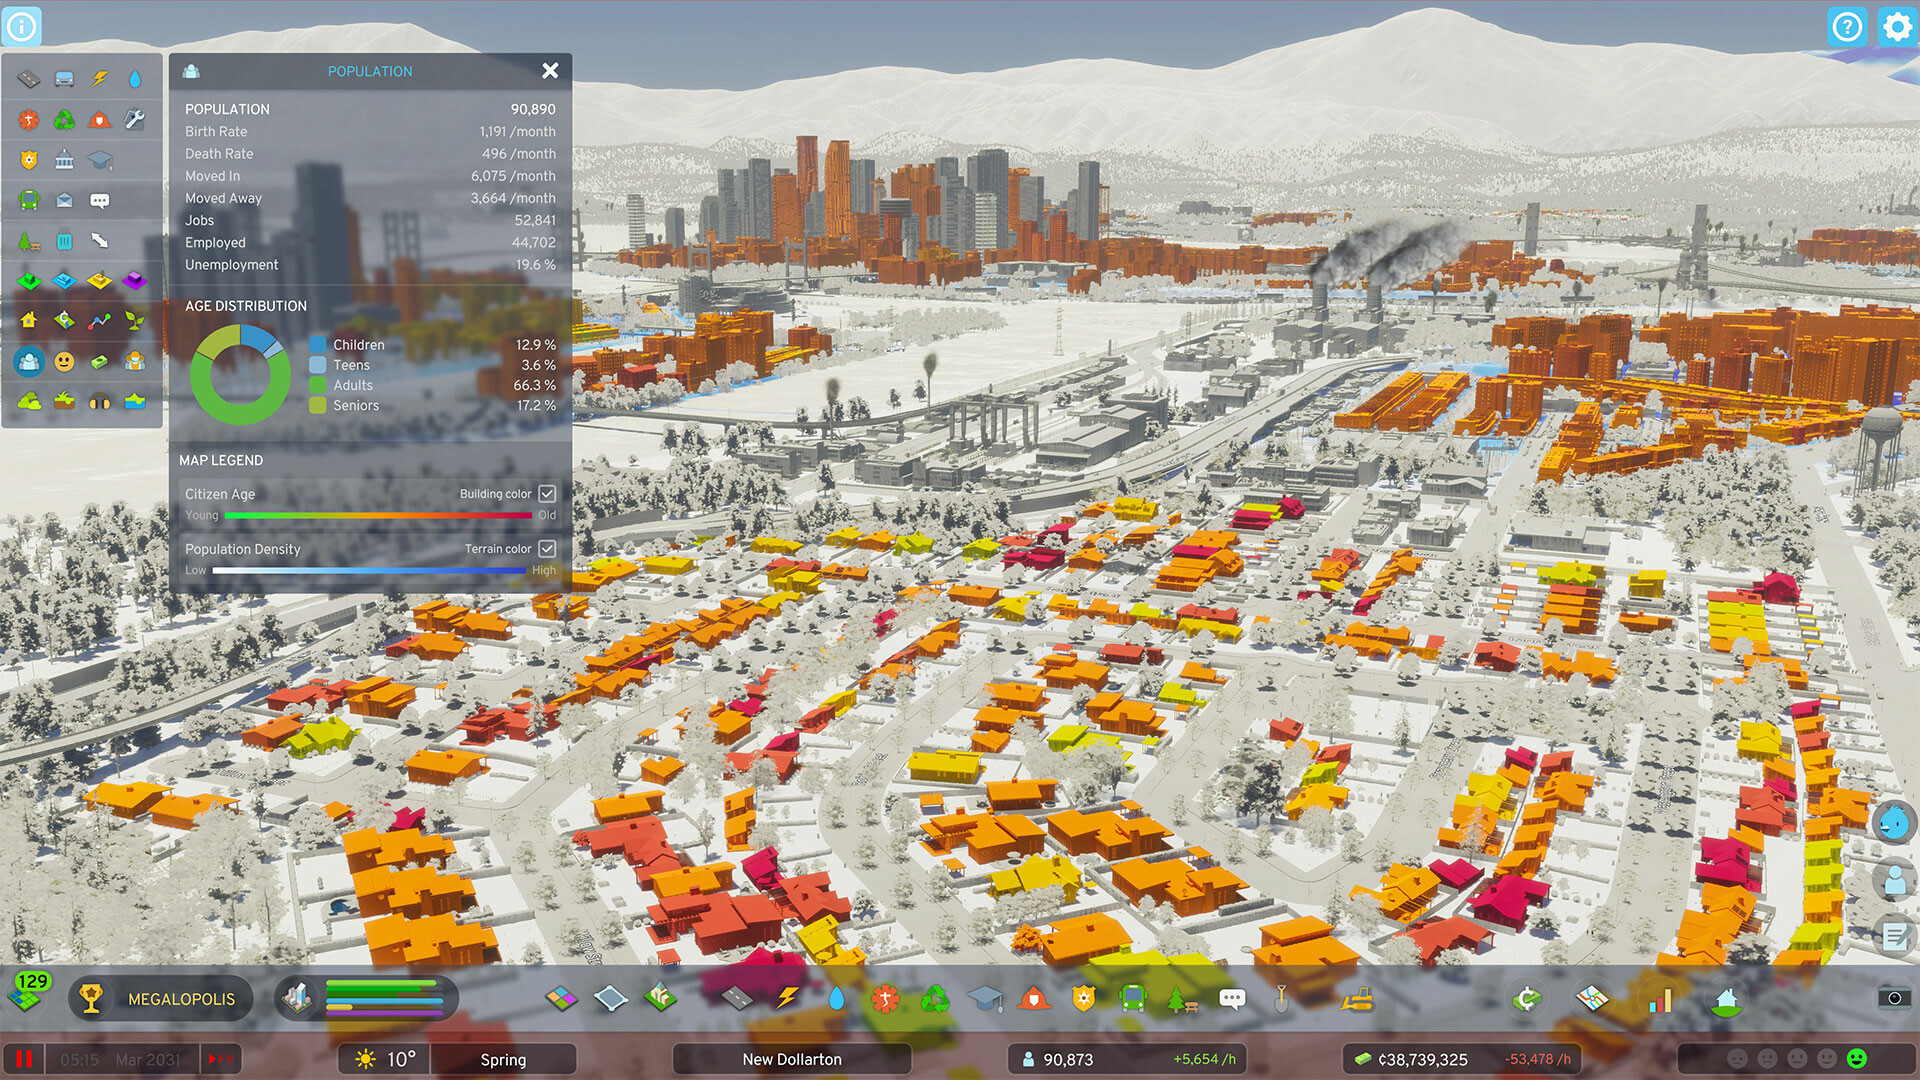 Cities: Skylines: confira gameplay e requisitos do jogo no PC